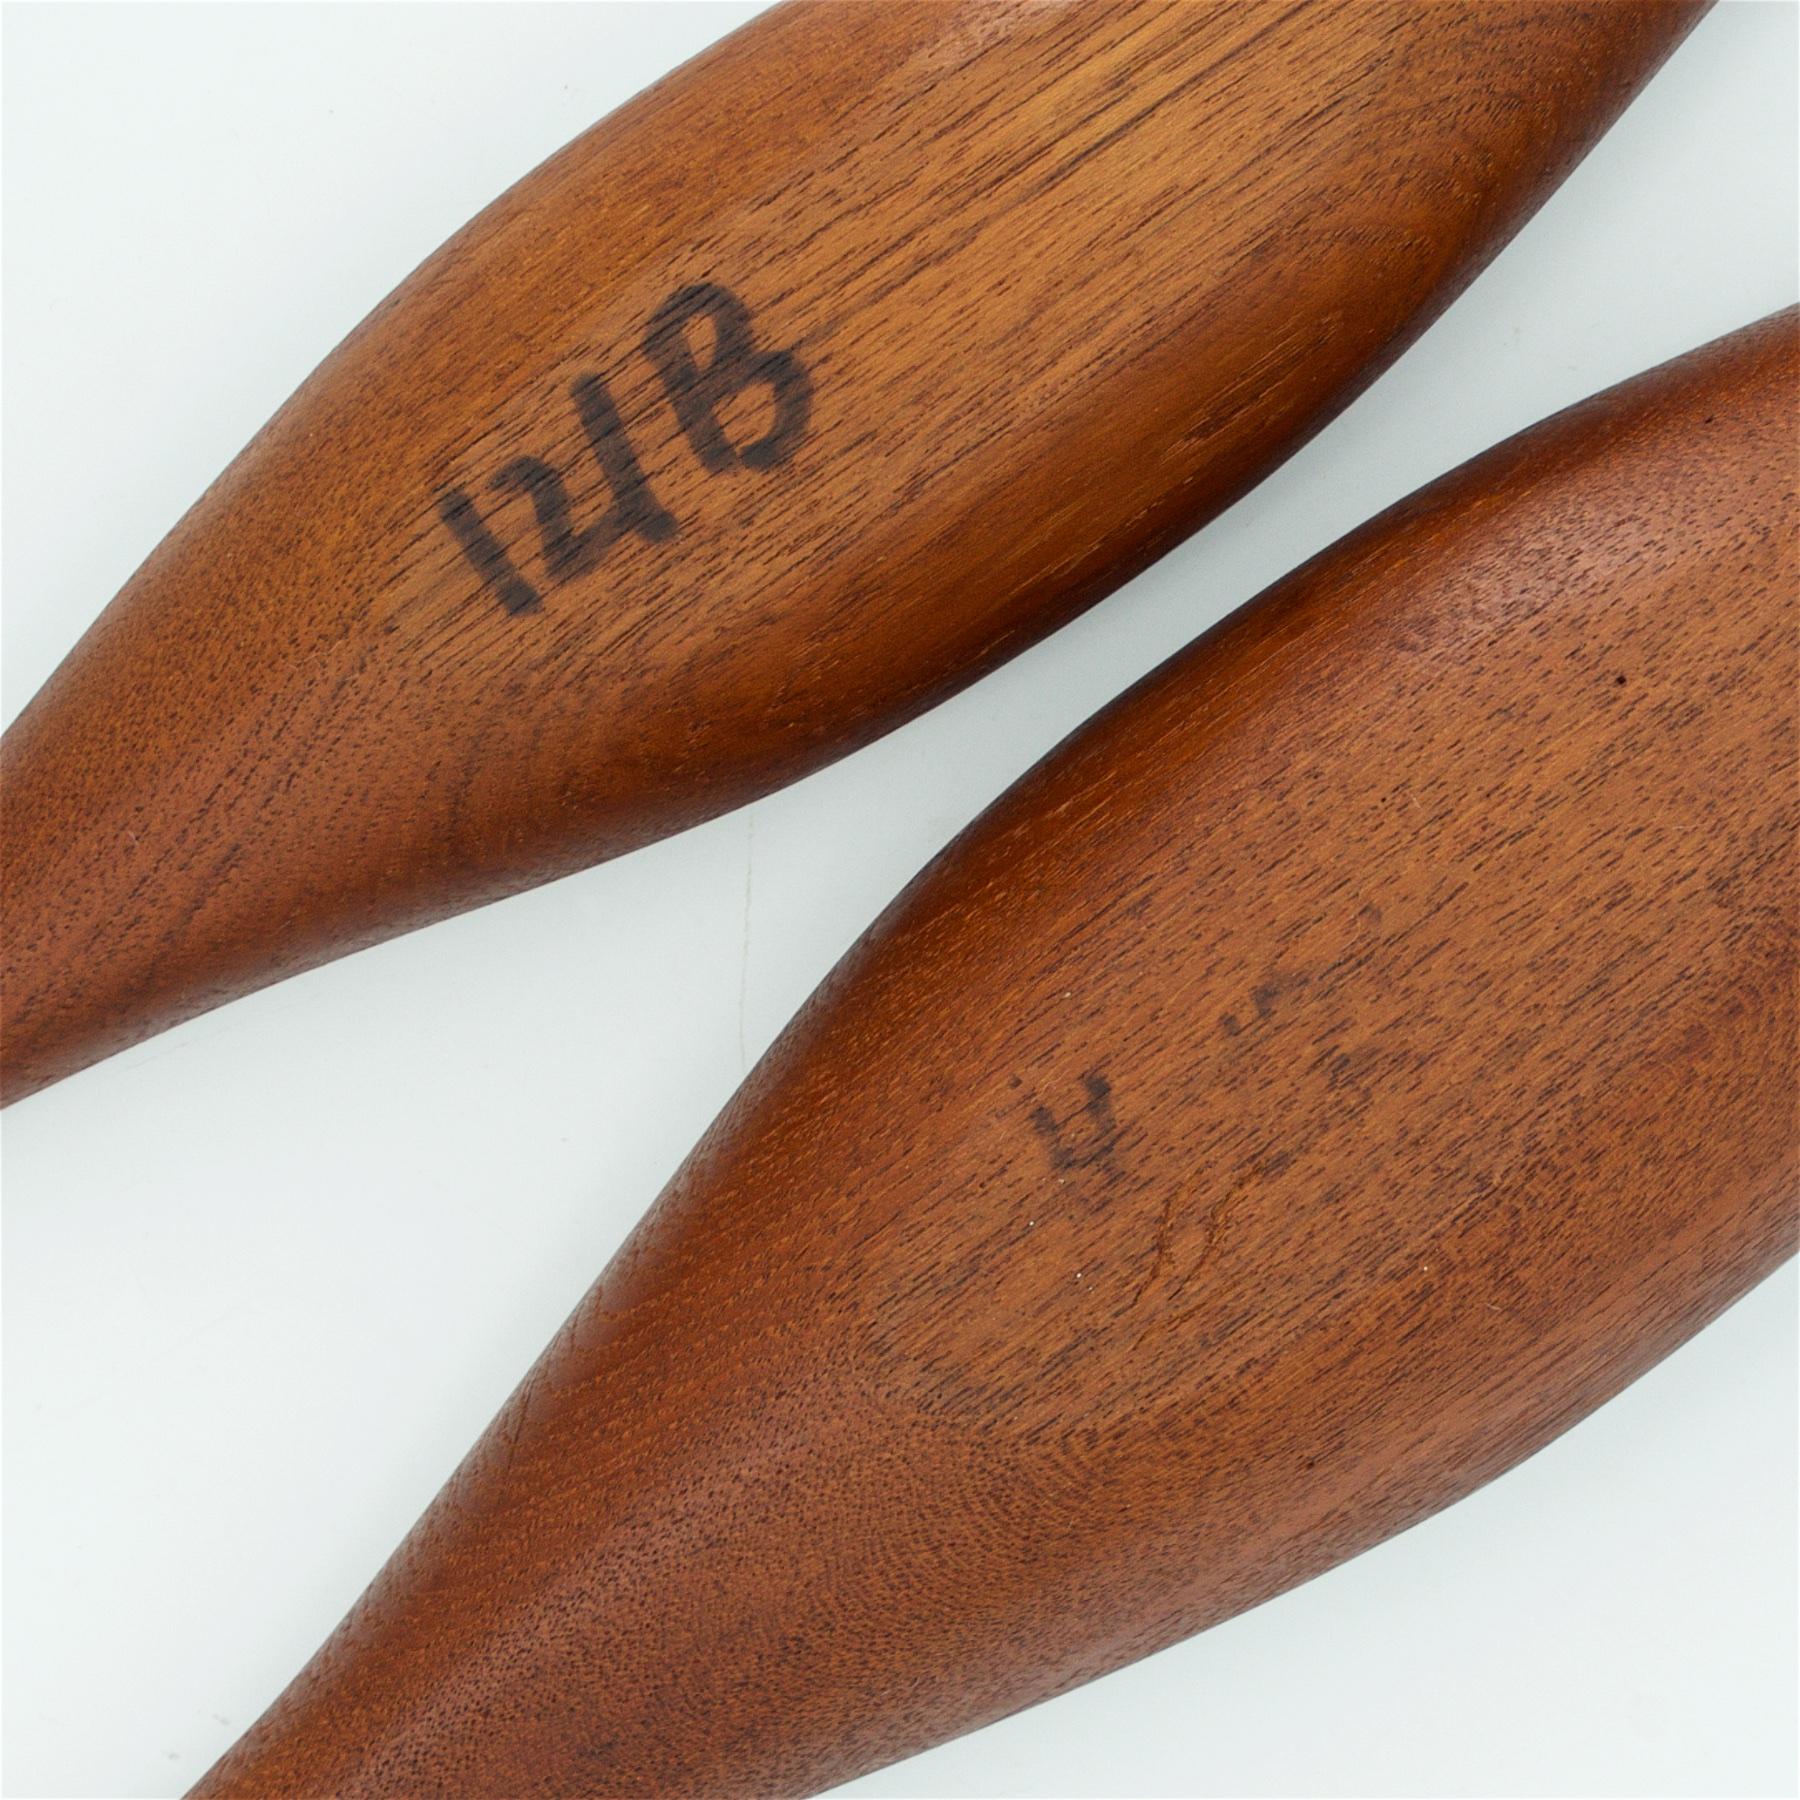 1950s Scandinavian Stig Sandqvist Hand Carved Teak Canoe Bowls Sculptures Design For Sale 1